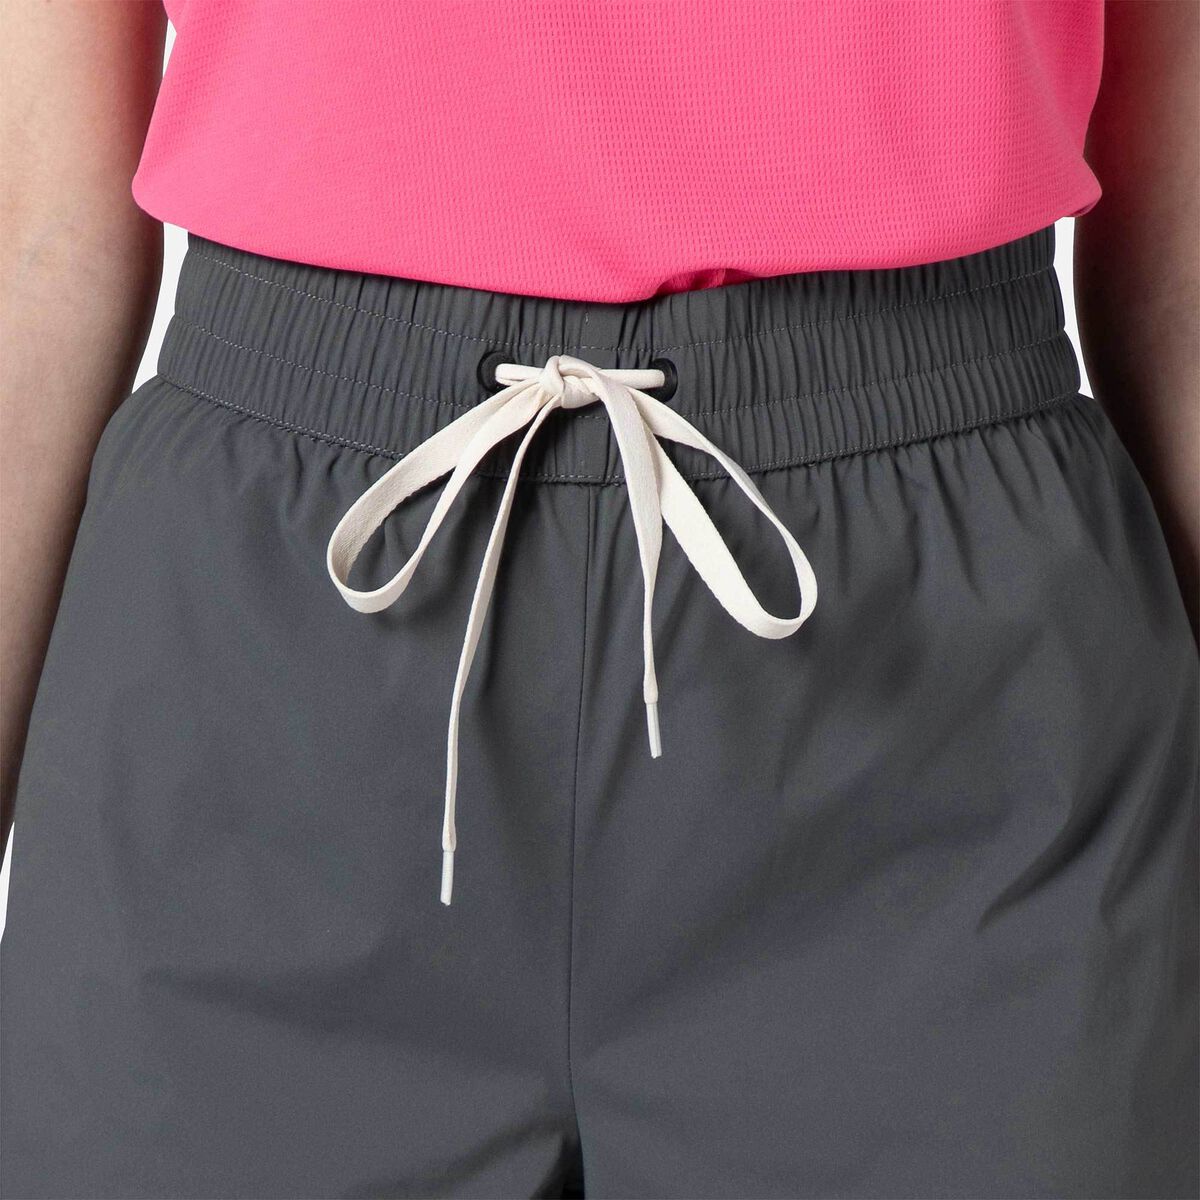 Pantalones cortos básicos para mujer